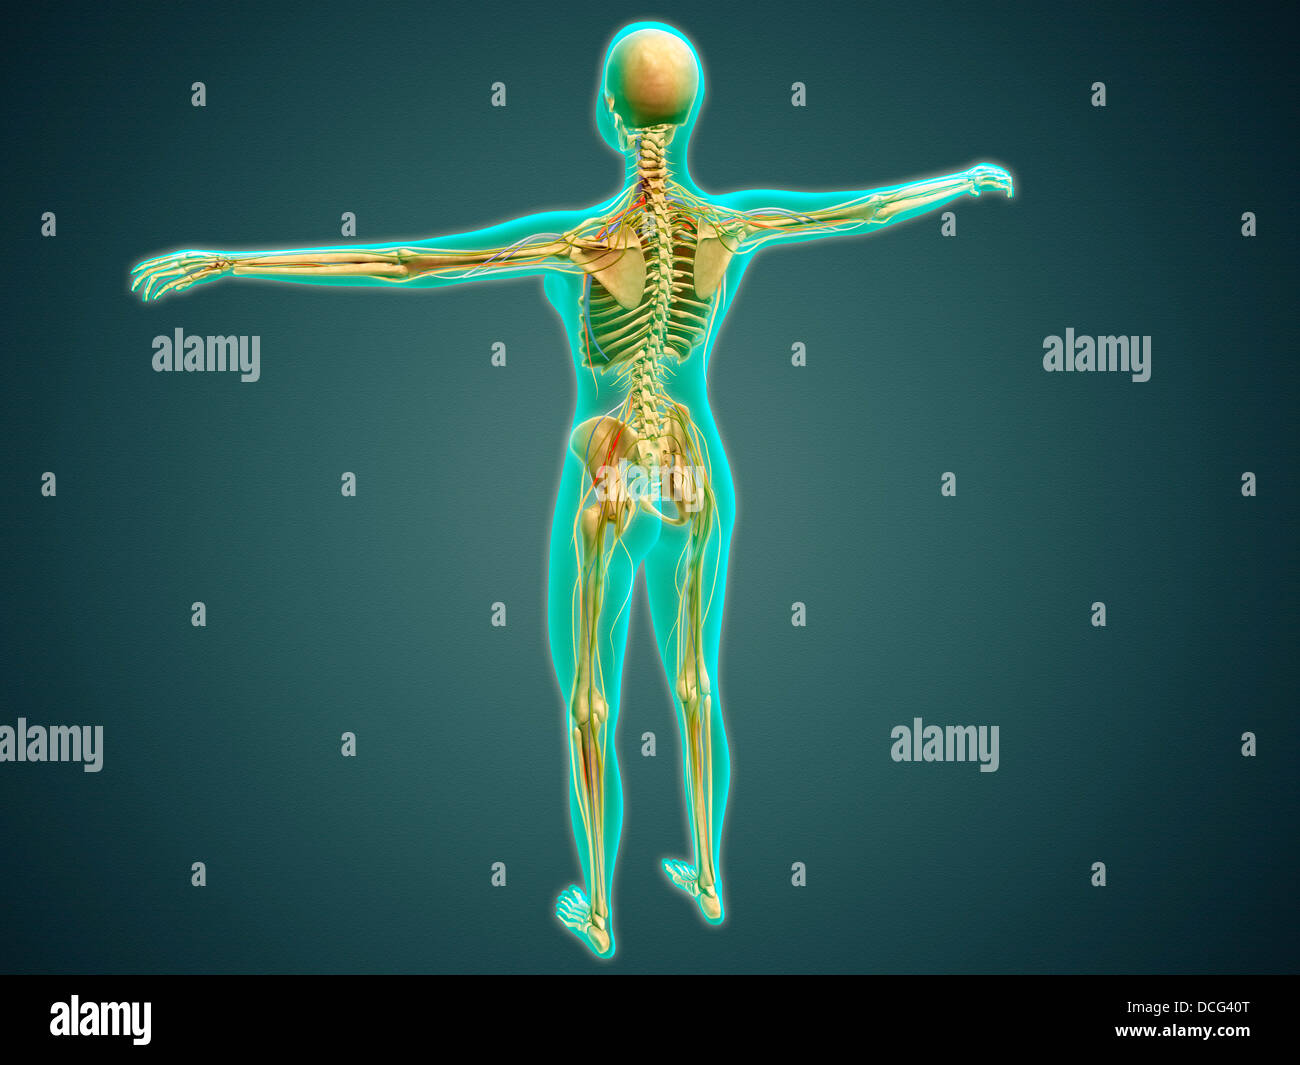 Illustrazione medica del corpo umano che mostra il sistema scheletrico, arterie, vene, e il sistema nervoso. Foto Stock